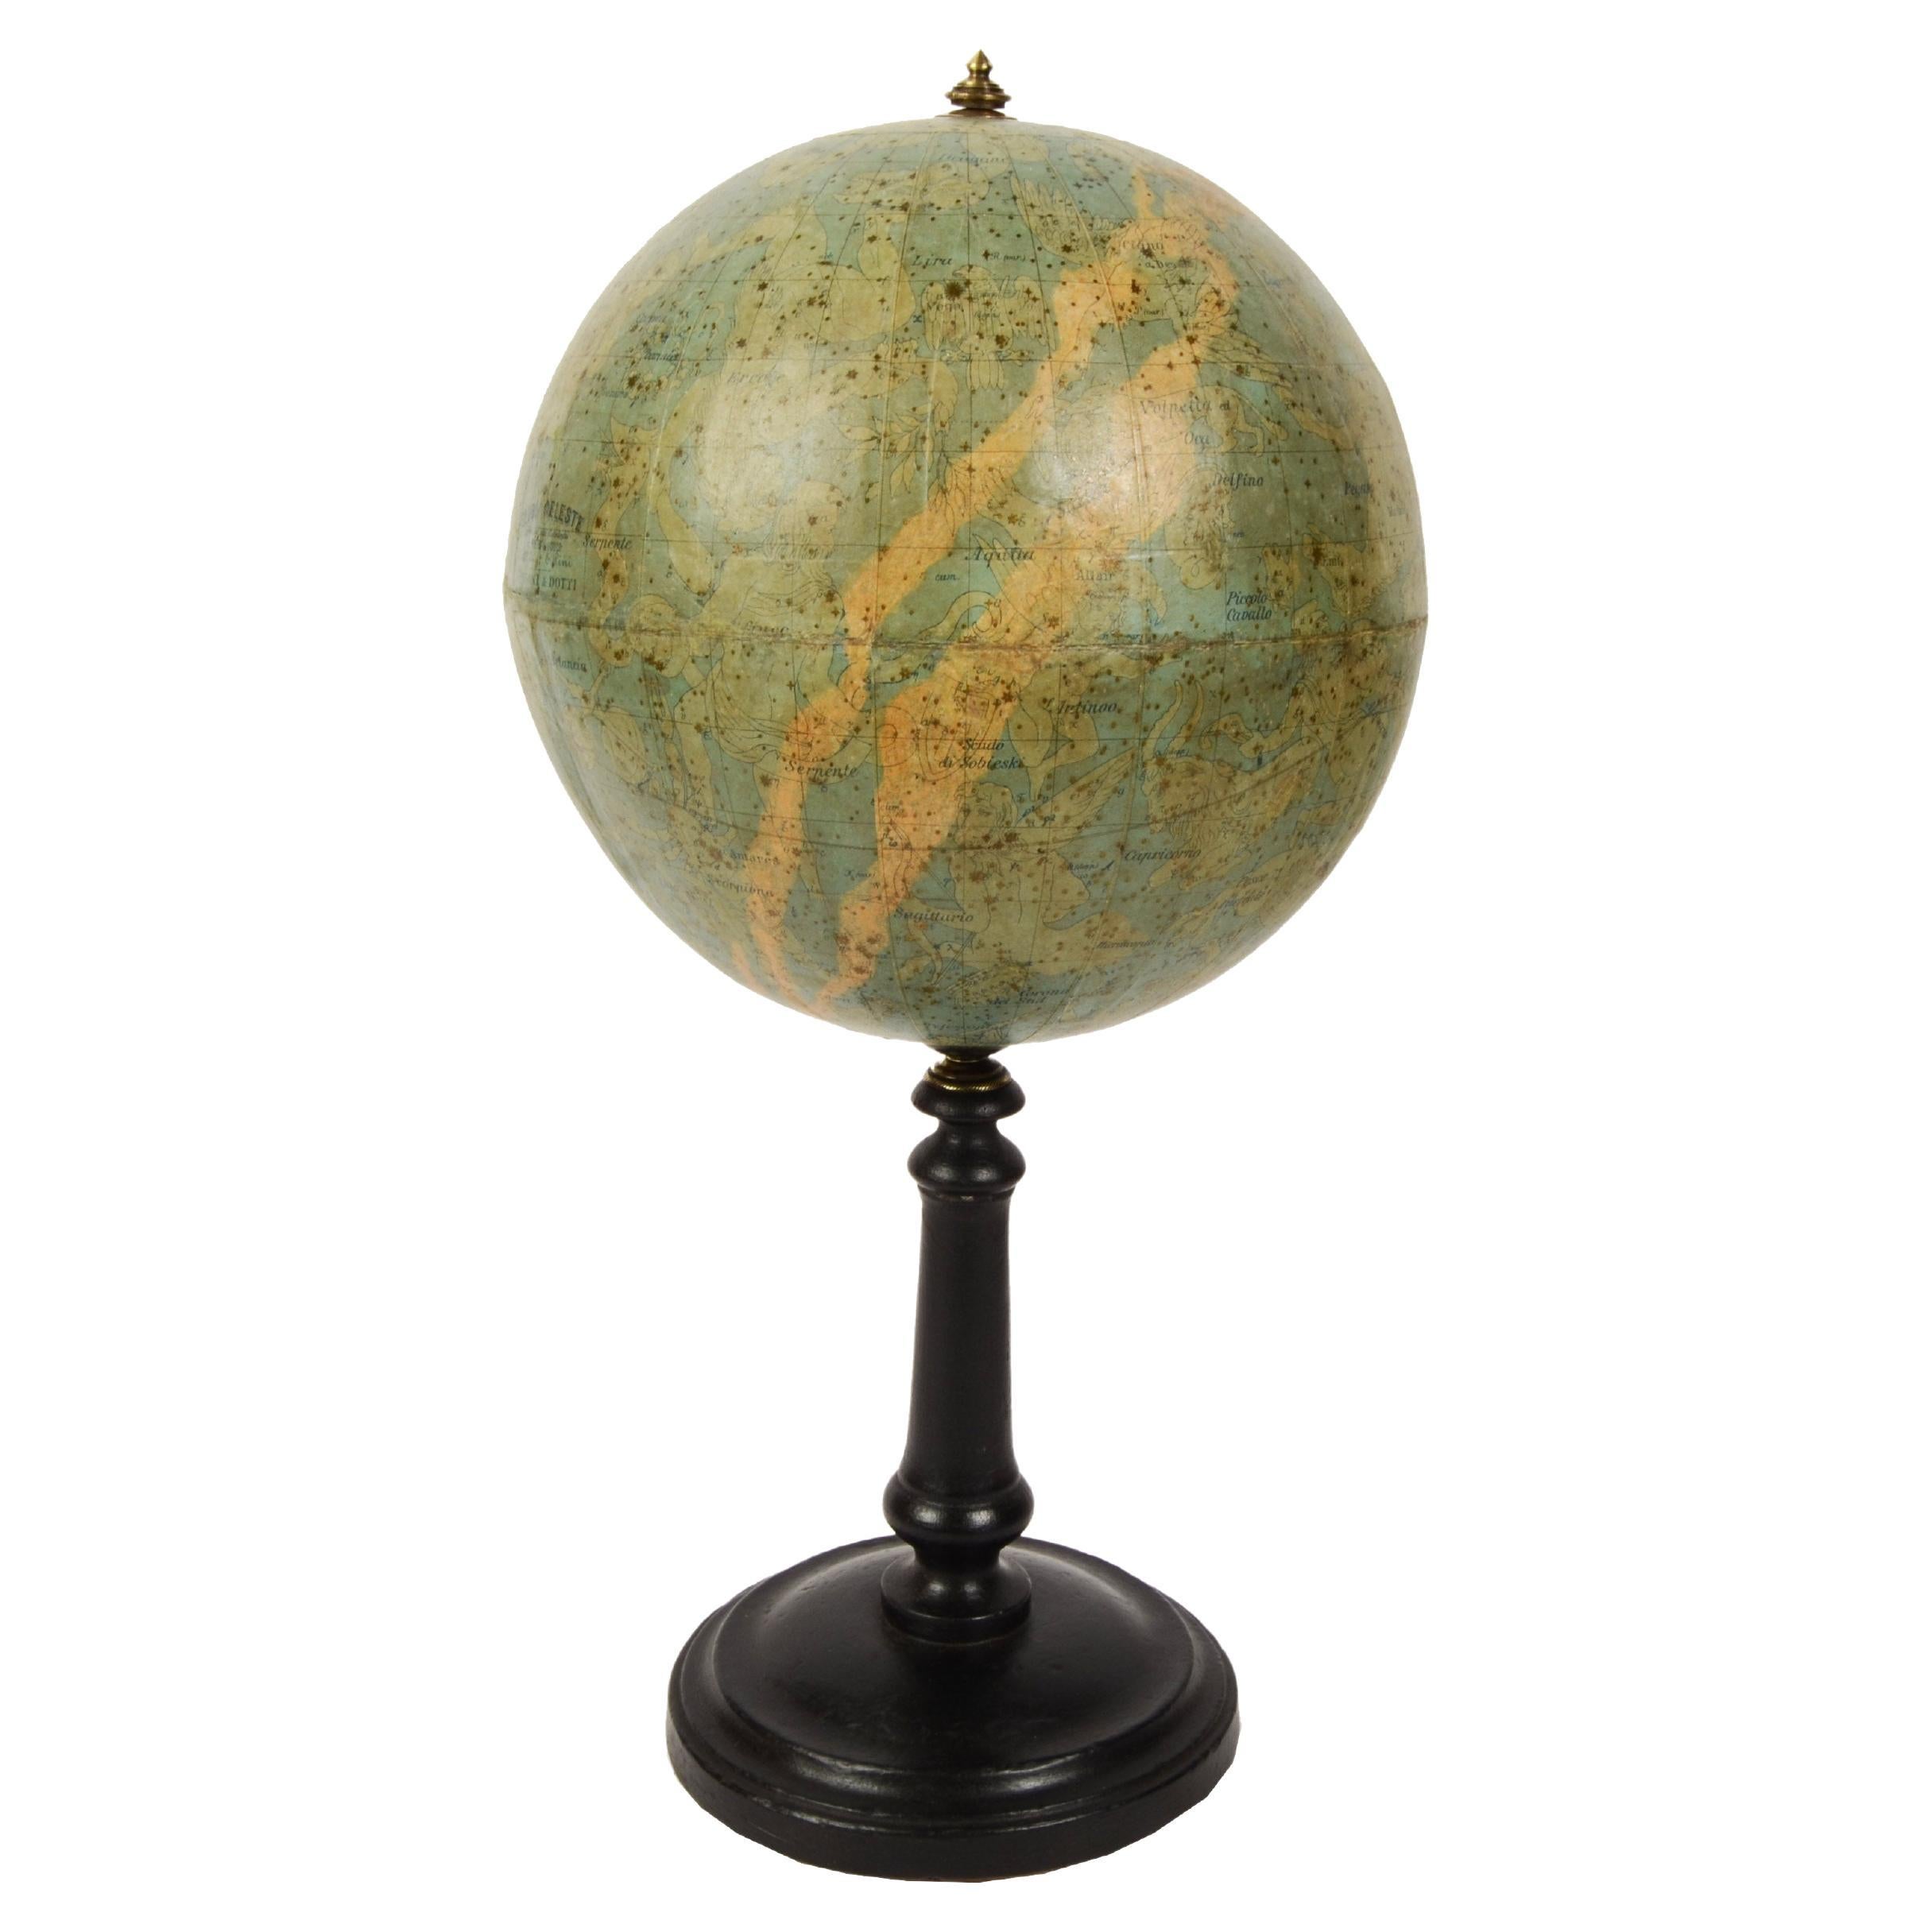 1889s Antique Celestial Globe Signed Gussoni e Dotti Milano Papier Maché Sphere